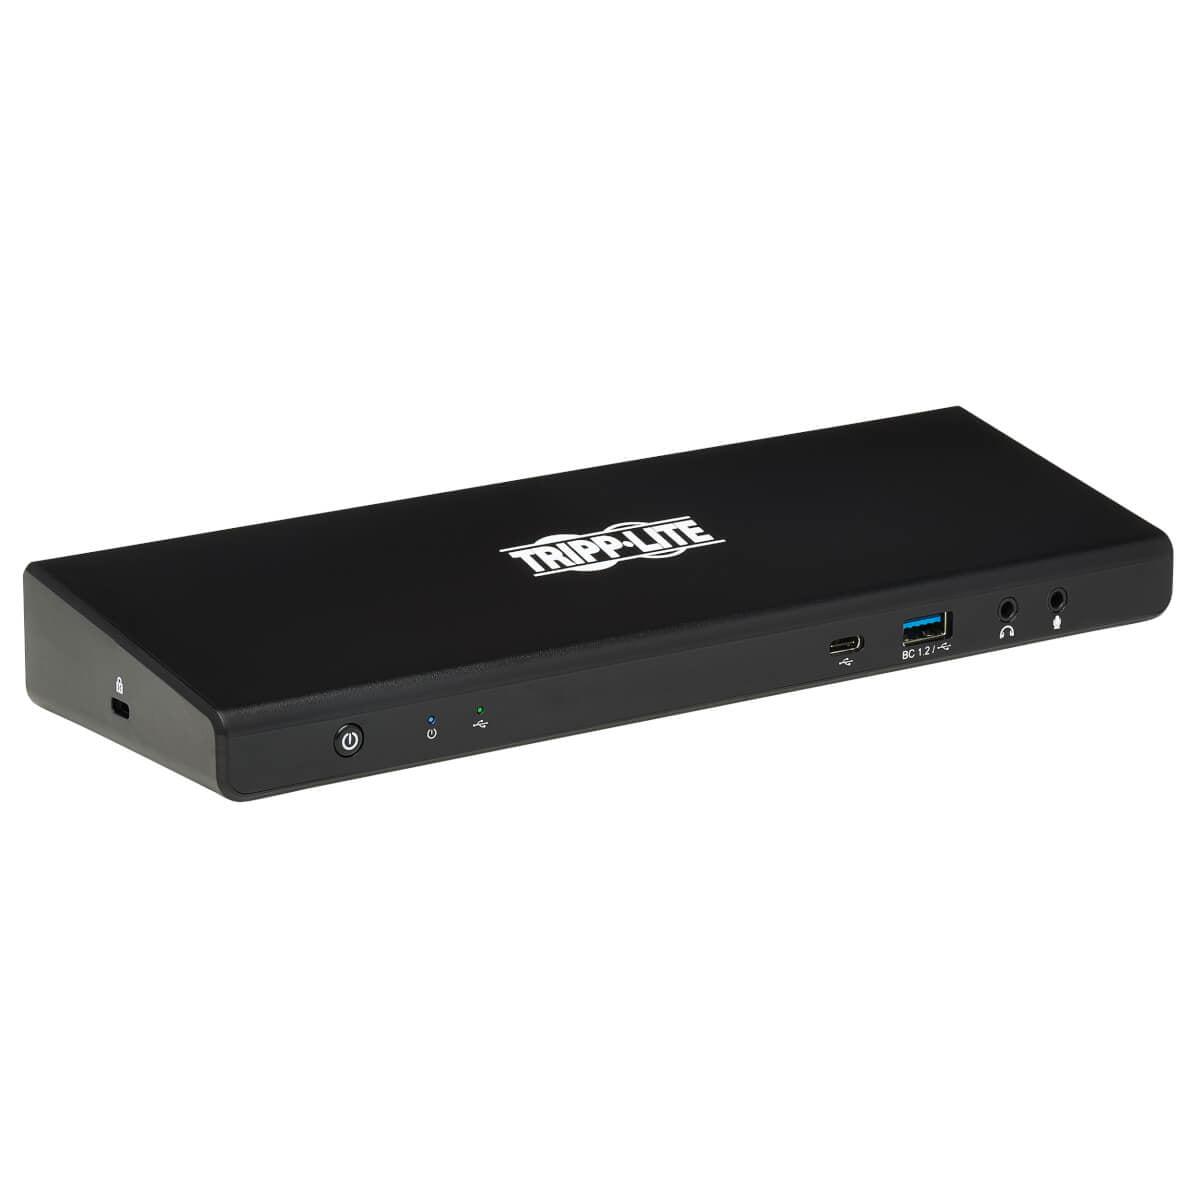 Tripp Lite Usb-C Dock, Dual Display - 5K 60 Hz Dp, 4K 60 Hz Hdmi, Usb 3.2 Gen 1, Usb-A/C Hub, Gbe, 85W Pd Charging